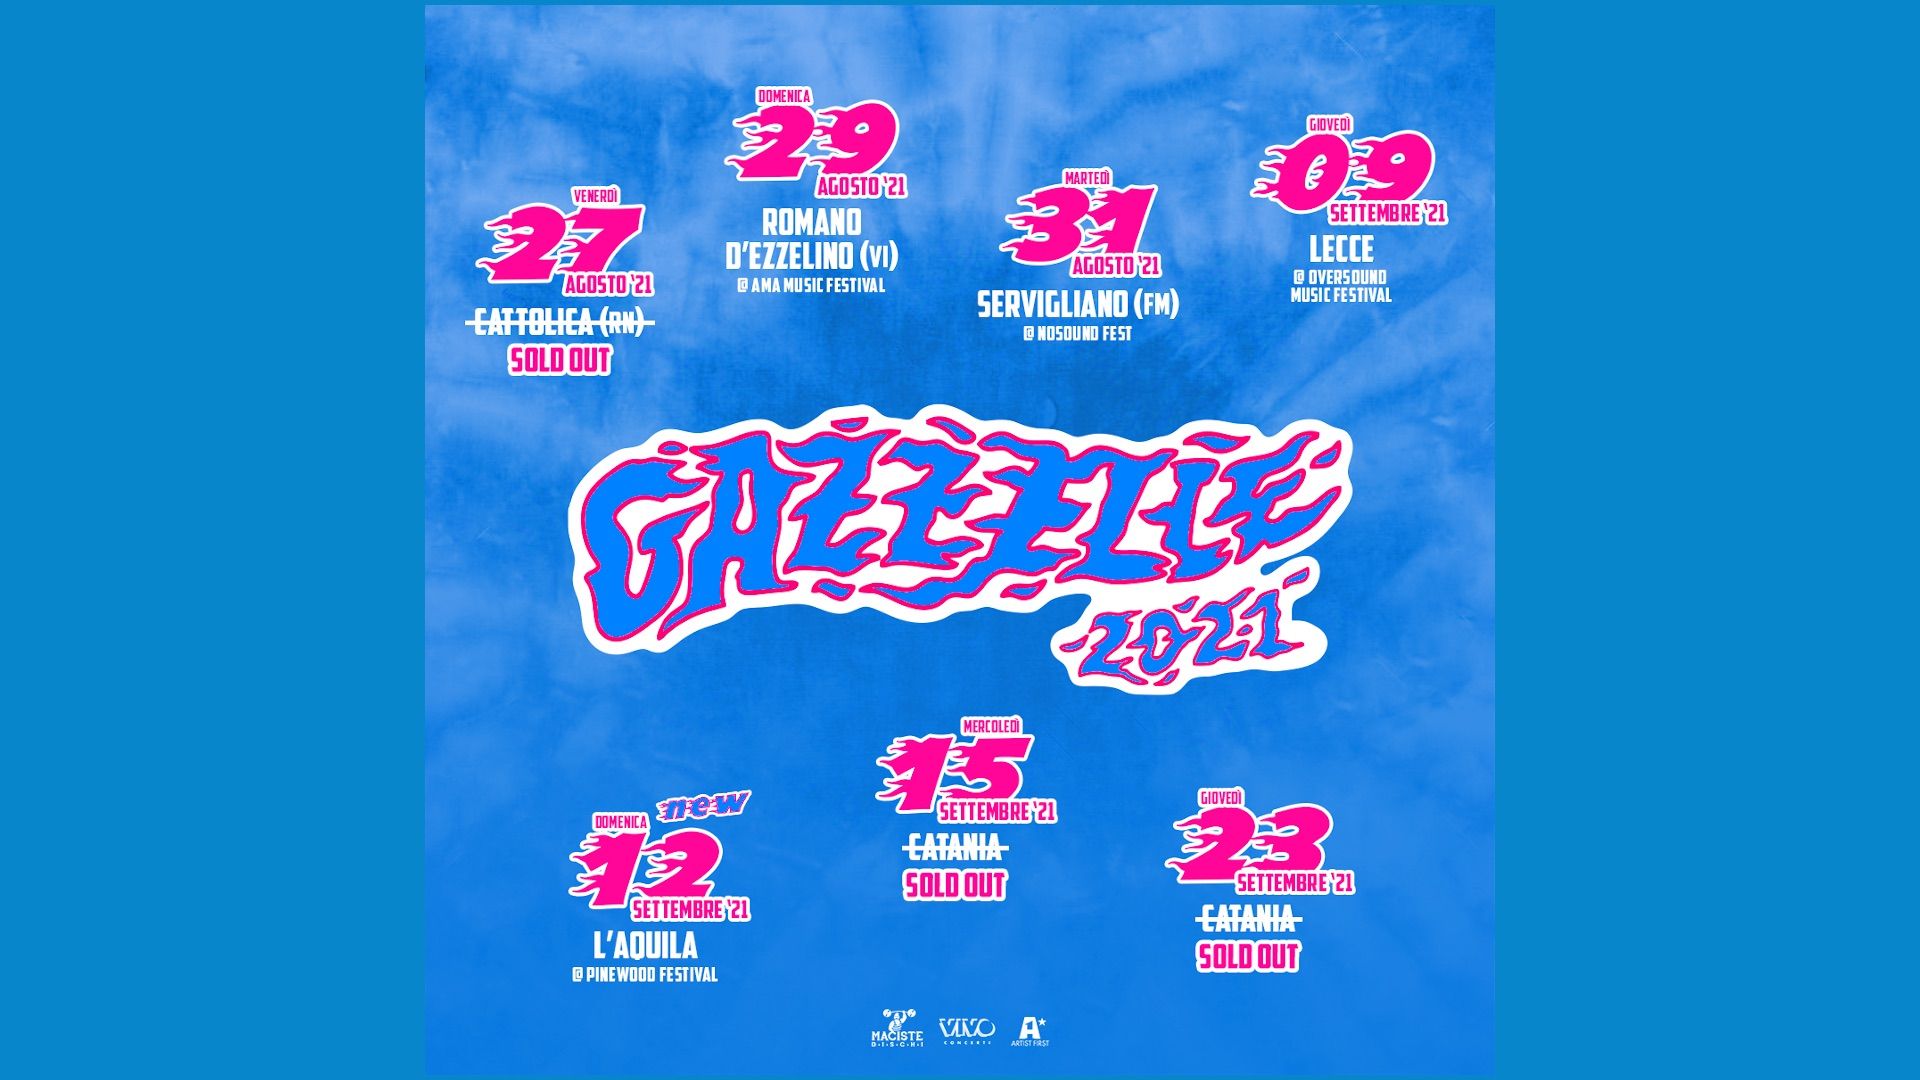 Gazzelle 2021 tour